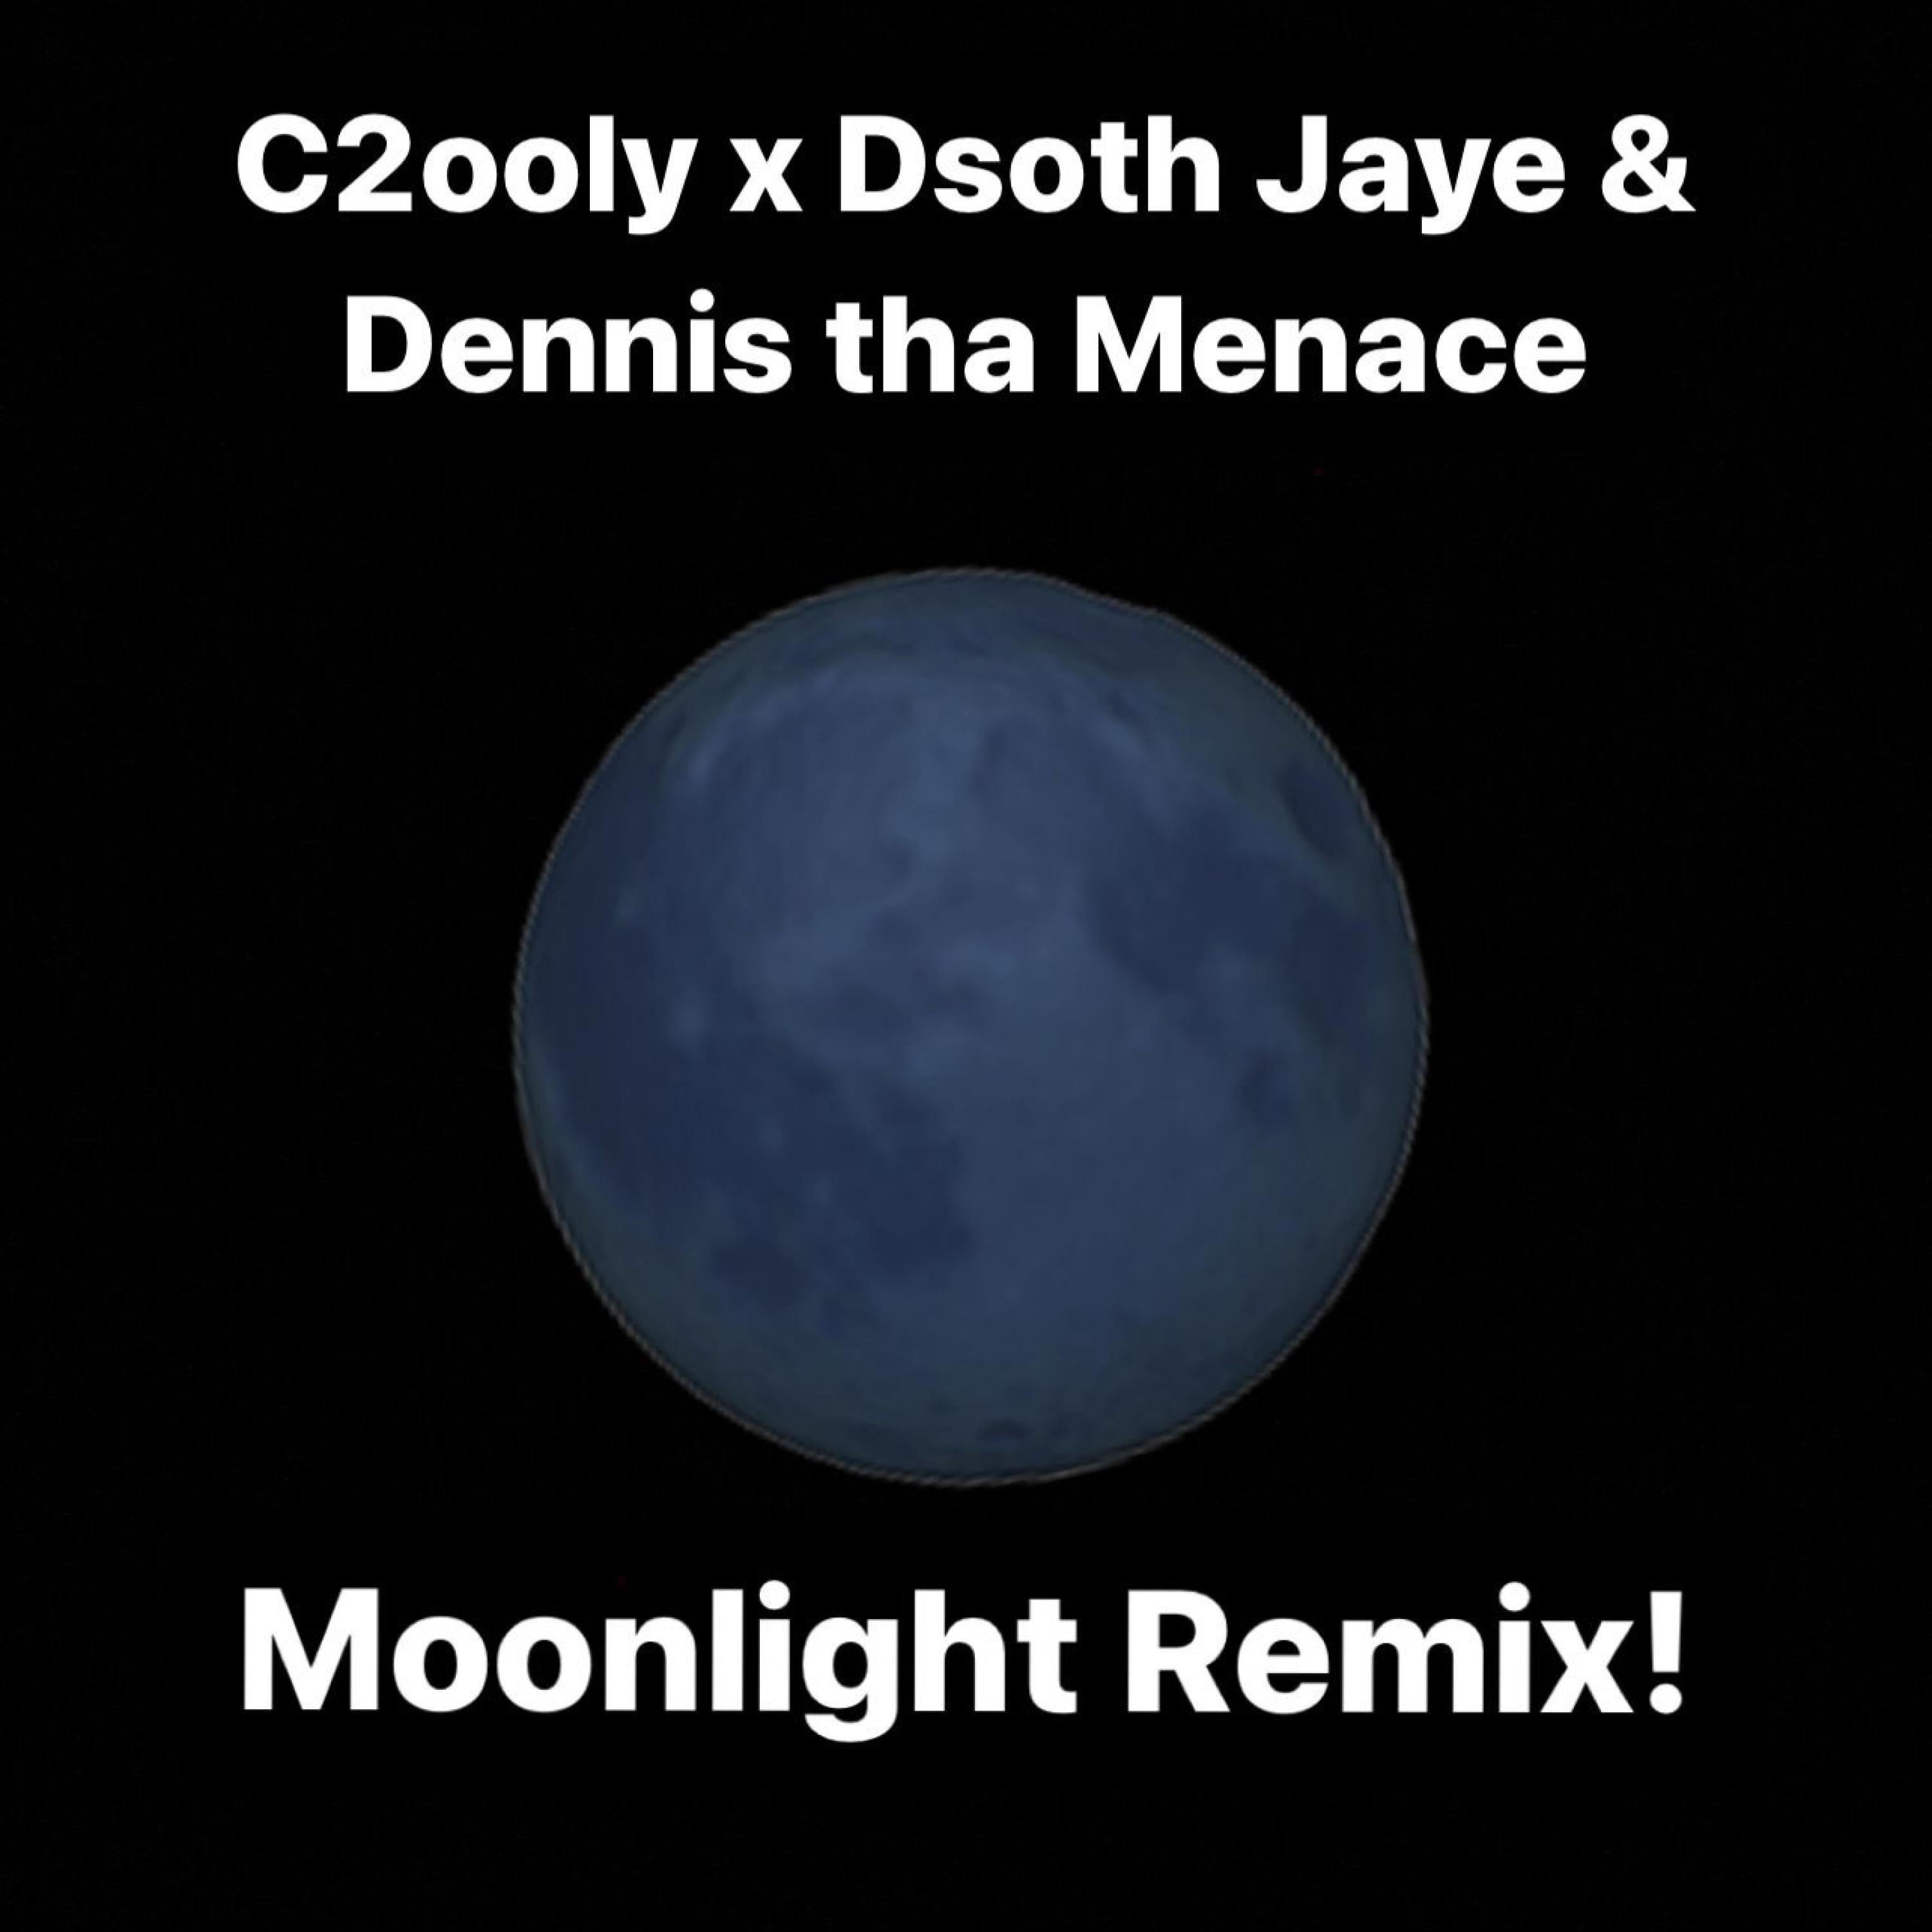 Dsoth Jaye - Moonlight! (feat. C2ooly & Dennis tha Menace) (Remix)